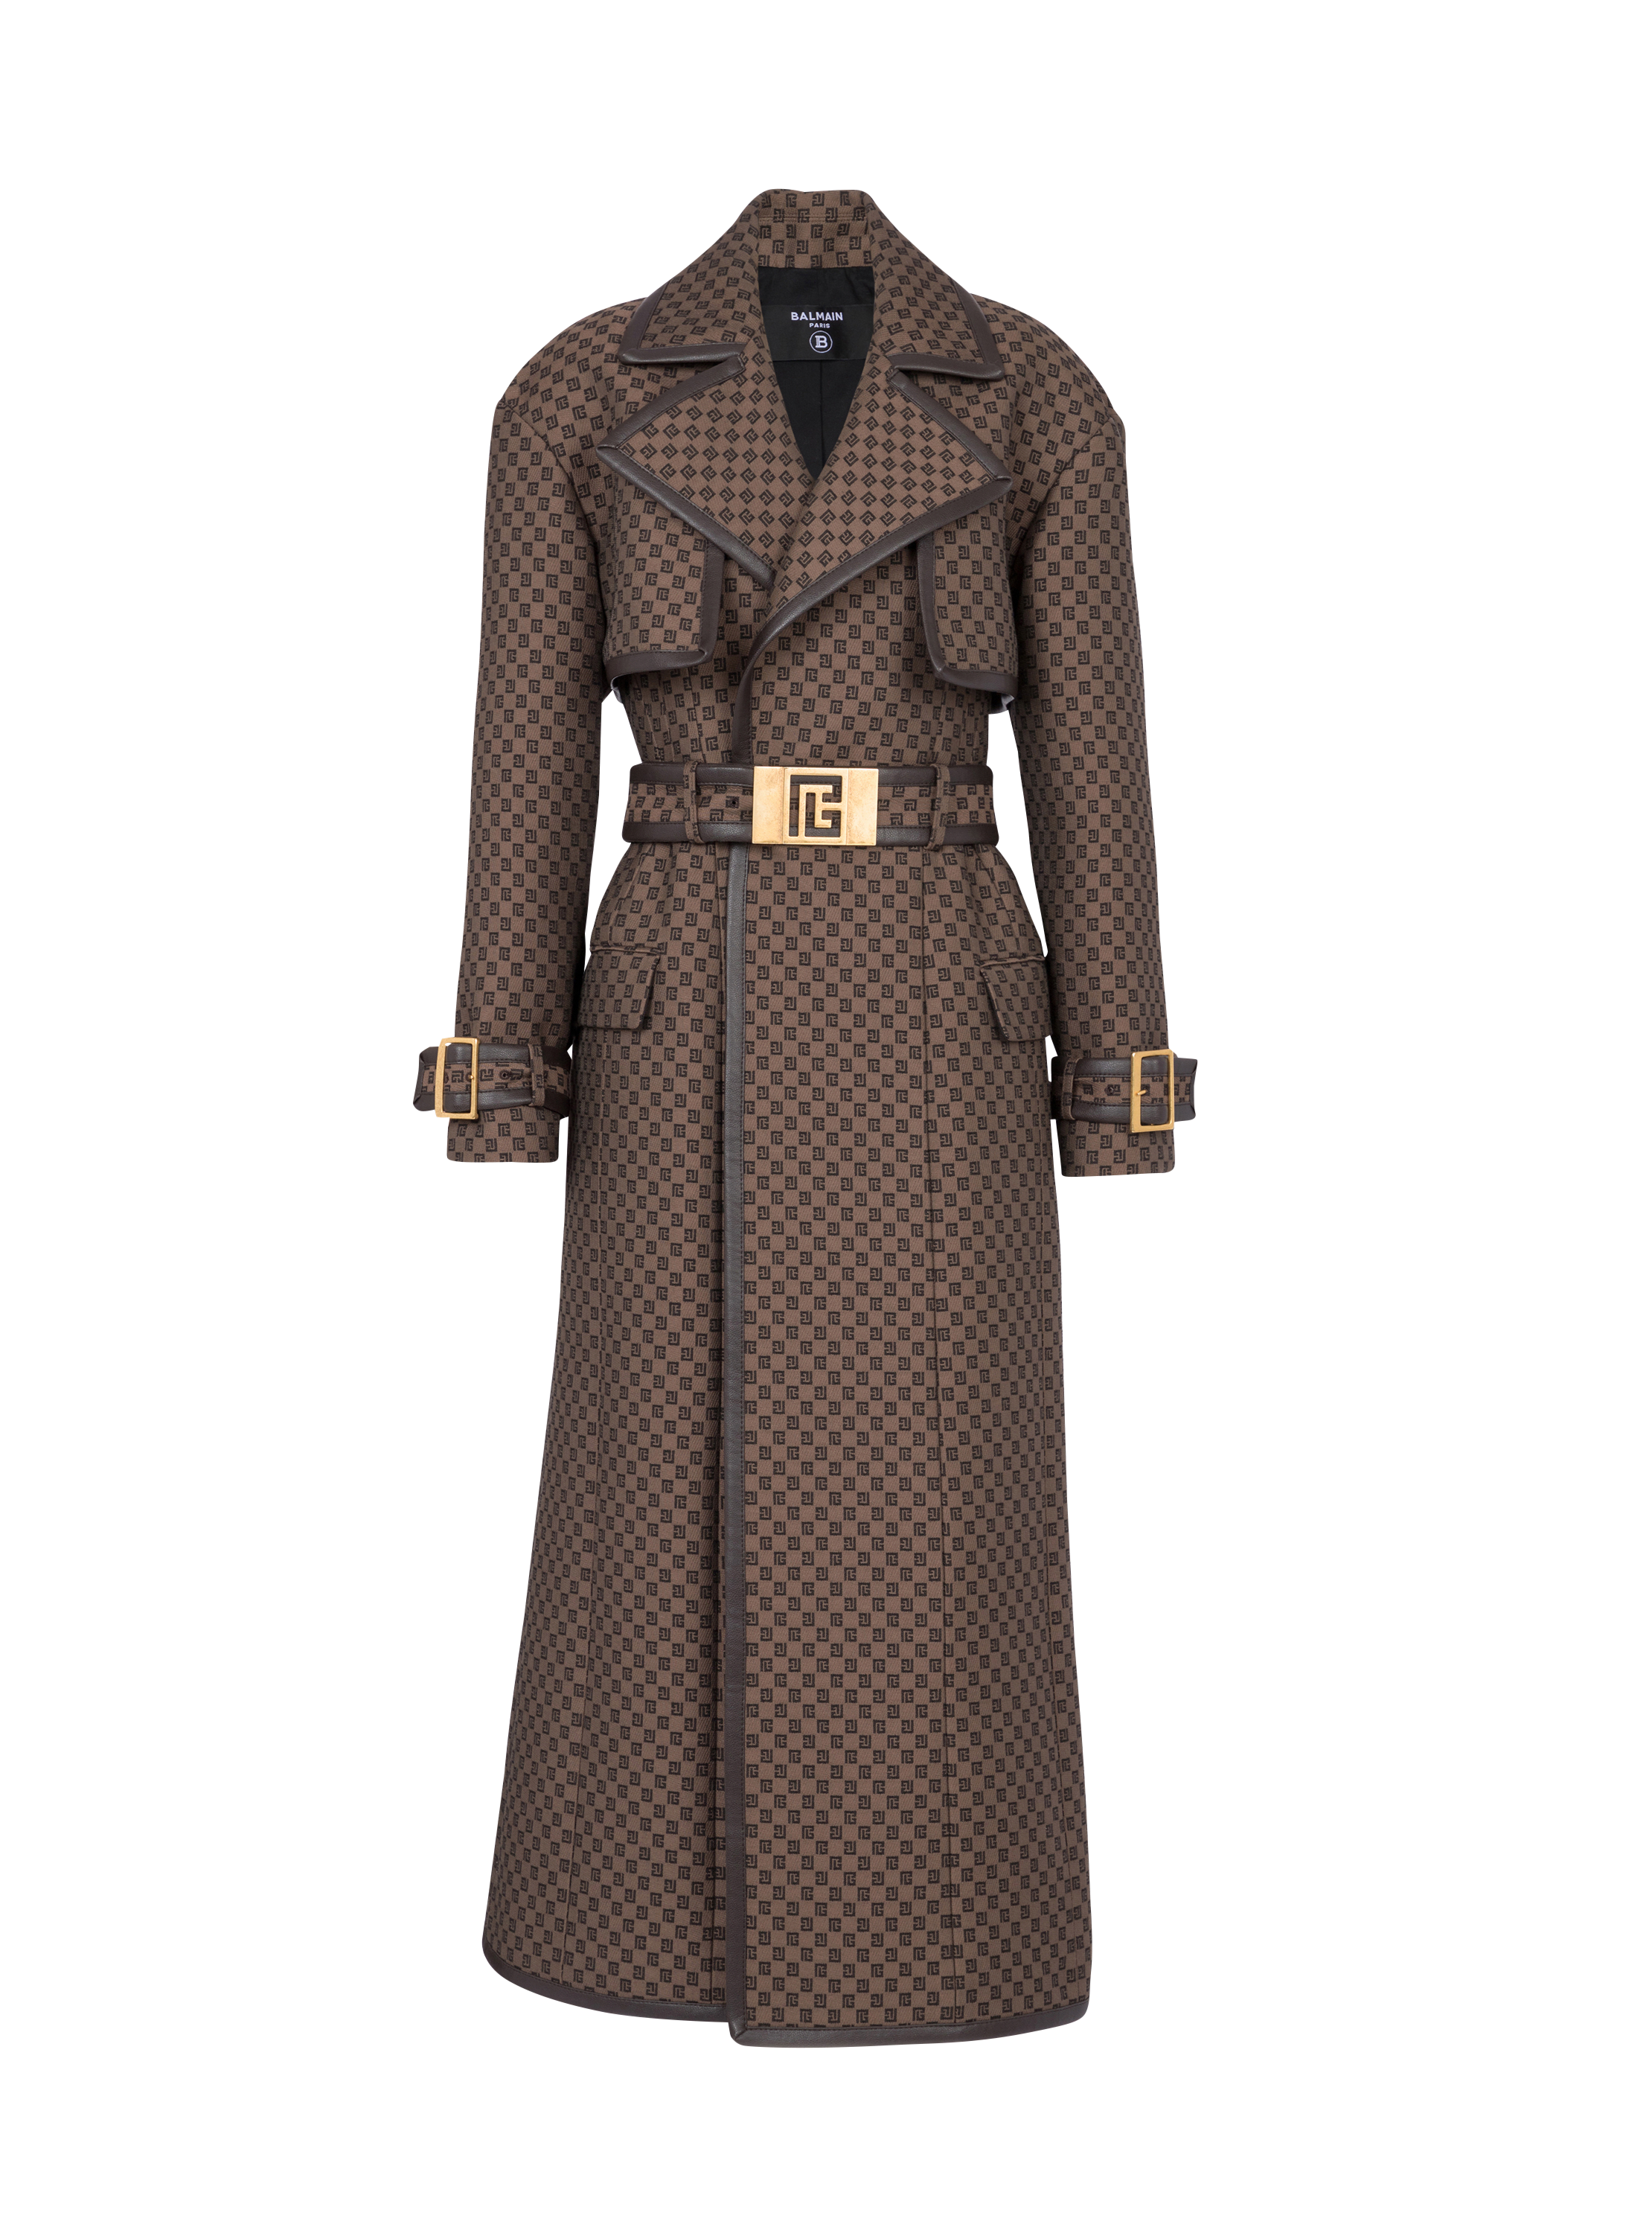 Mini monogram jacquard trench coat, brown, hi-res